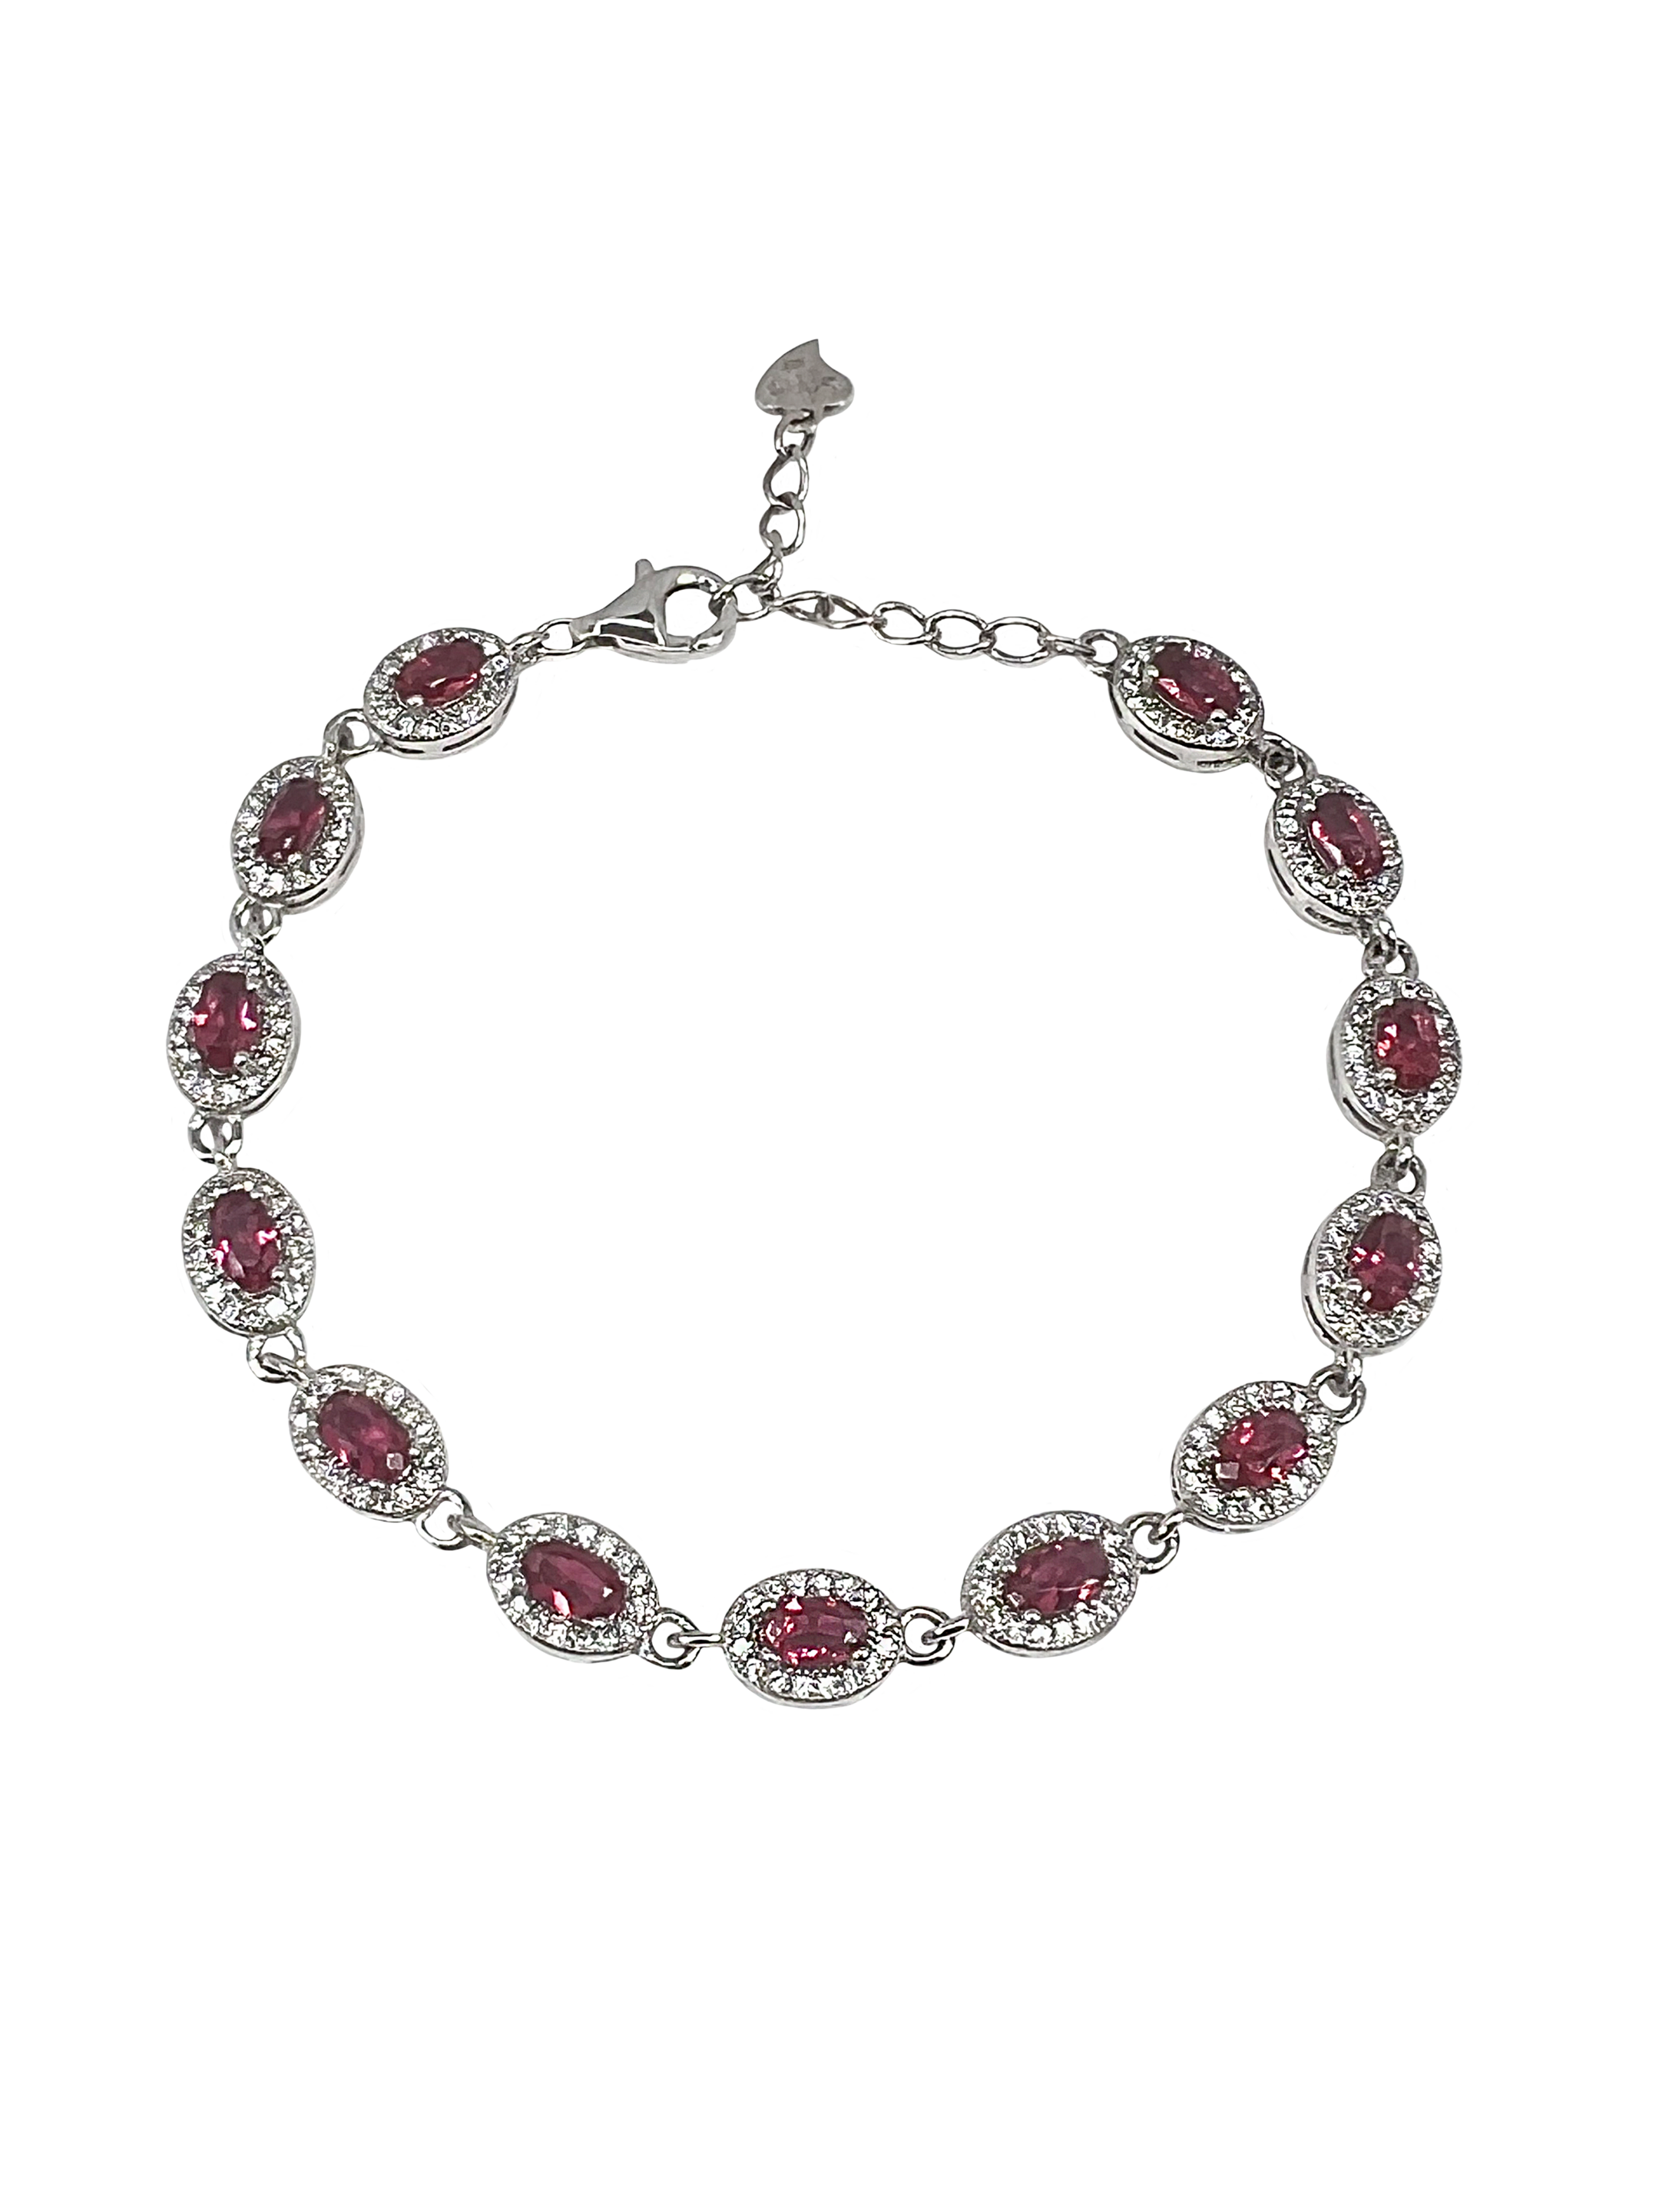 Silver bracelet with dark pink zircons